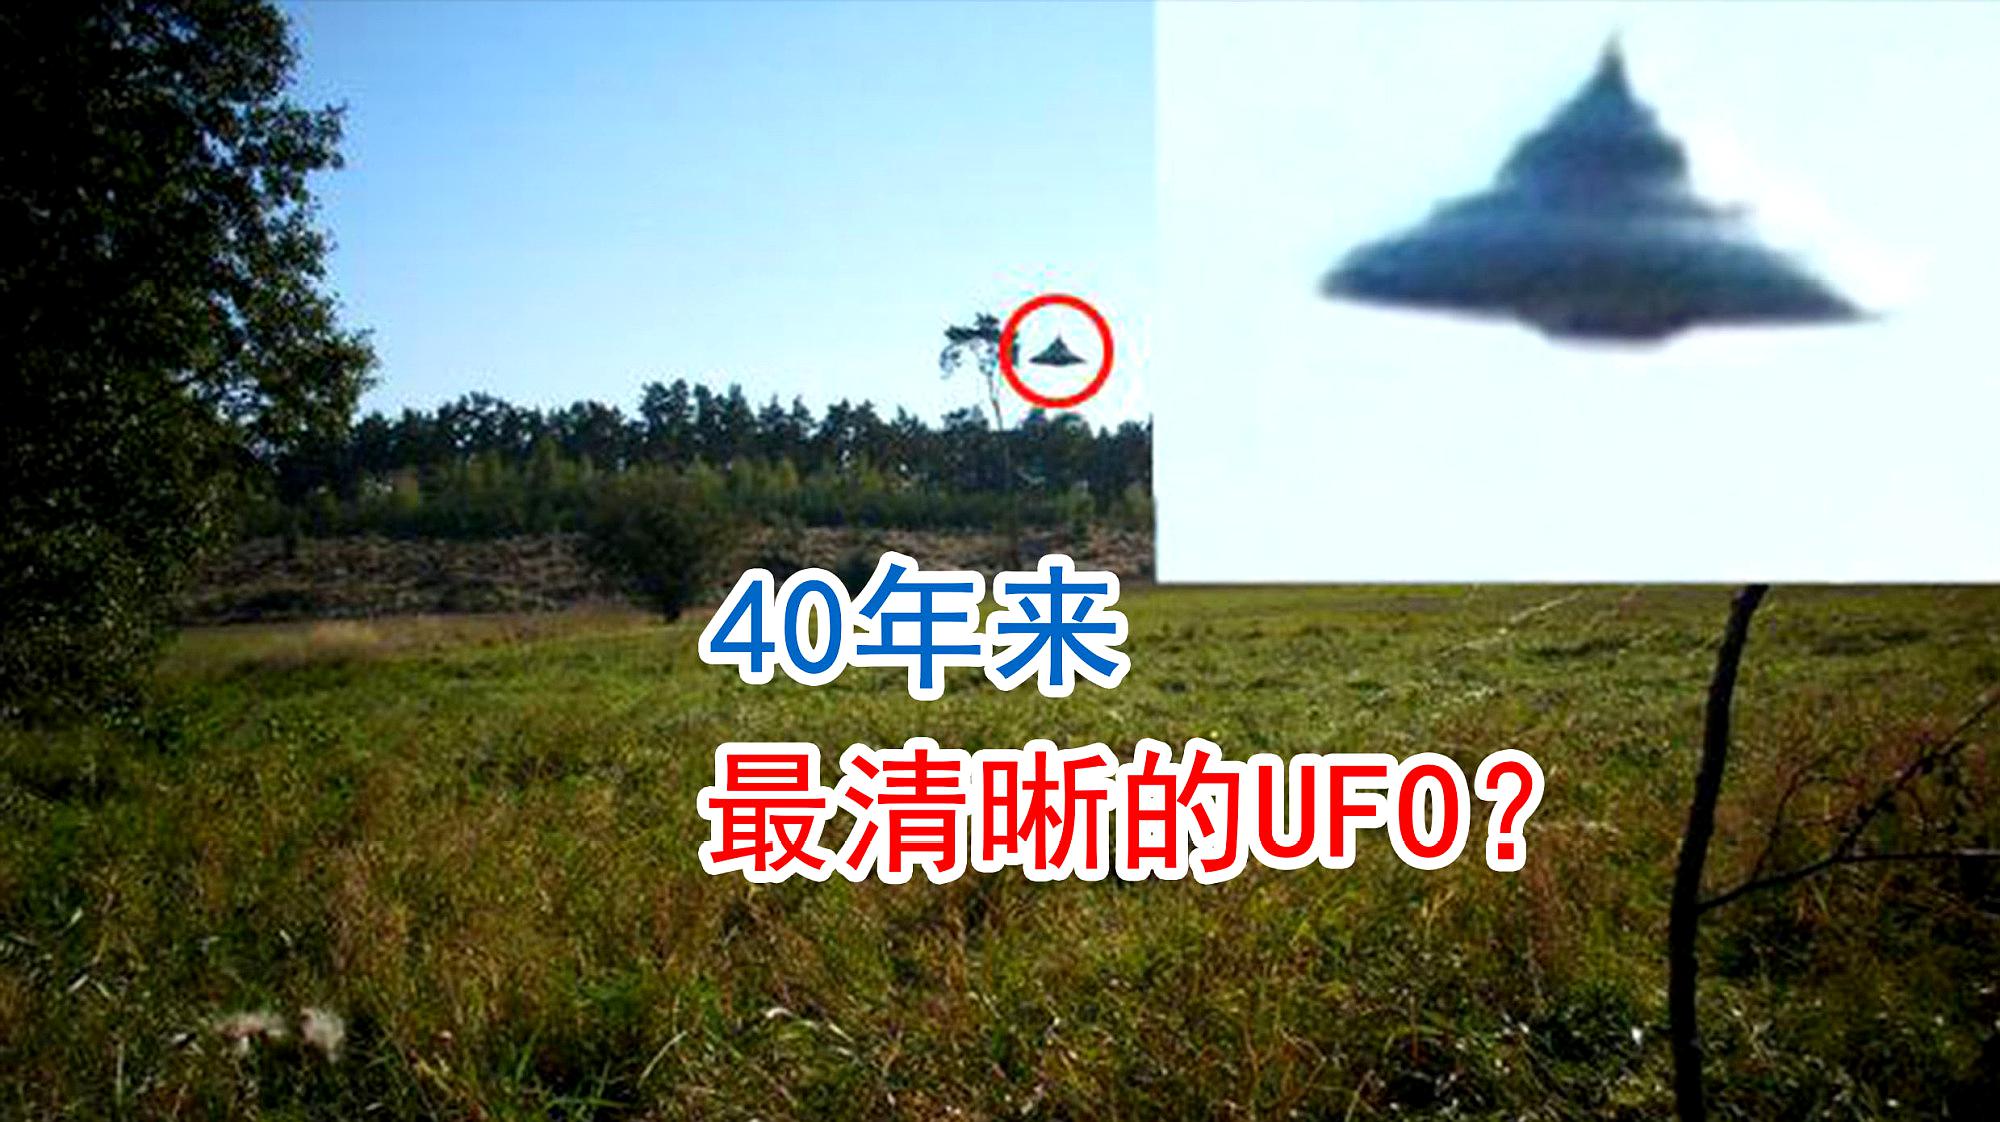 号称40年来最清晰的ufo目击照片?